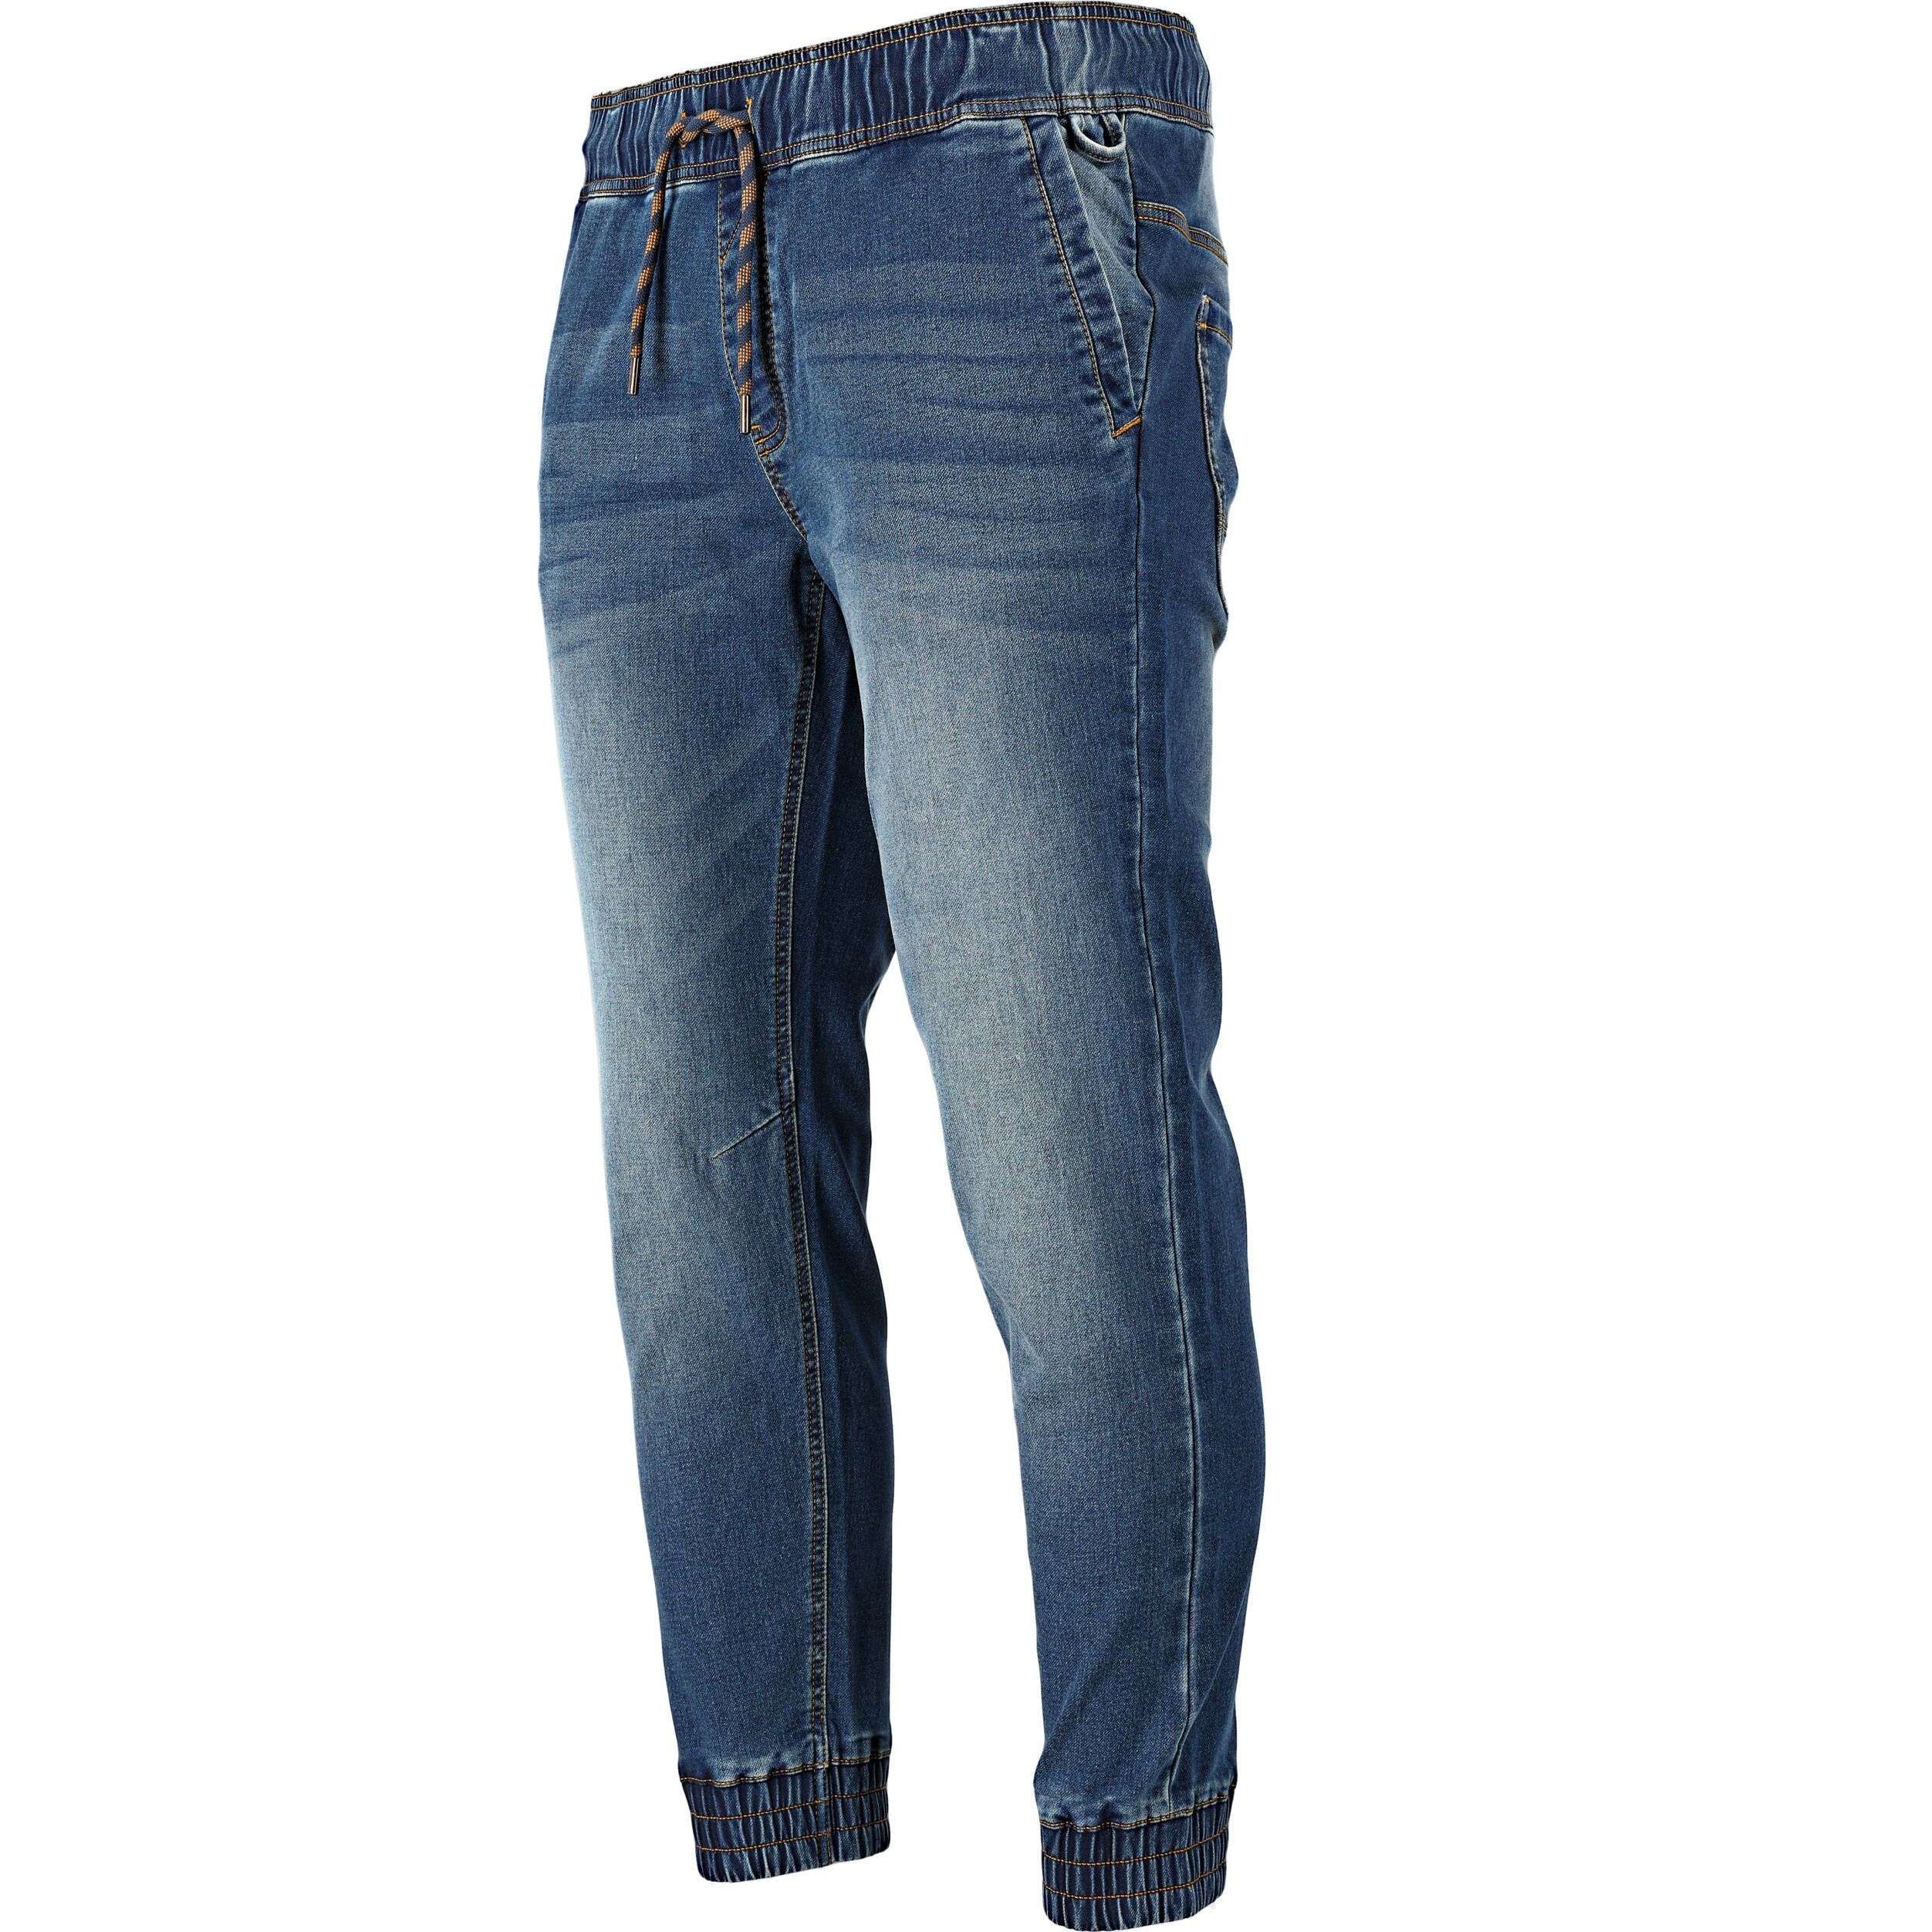 L4053502--Spodnie joggery jeansowe niebieskie stretch, "m", ce, lahti